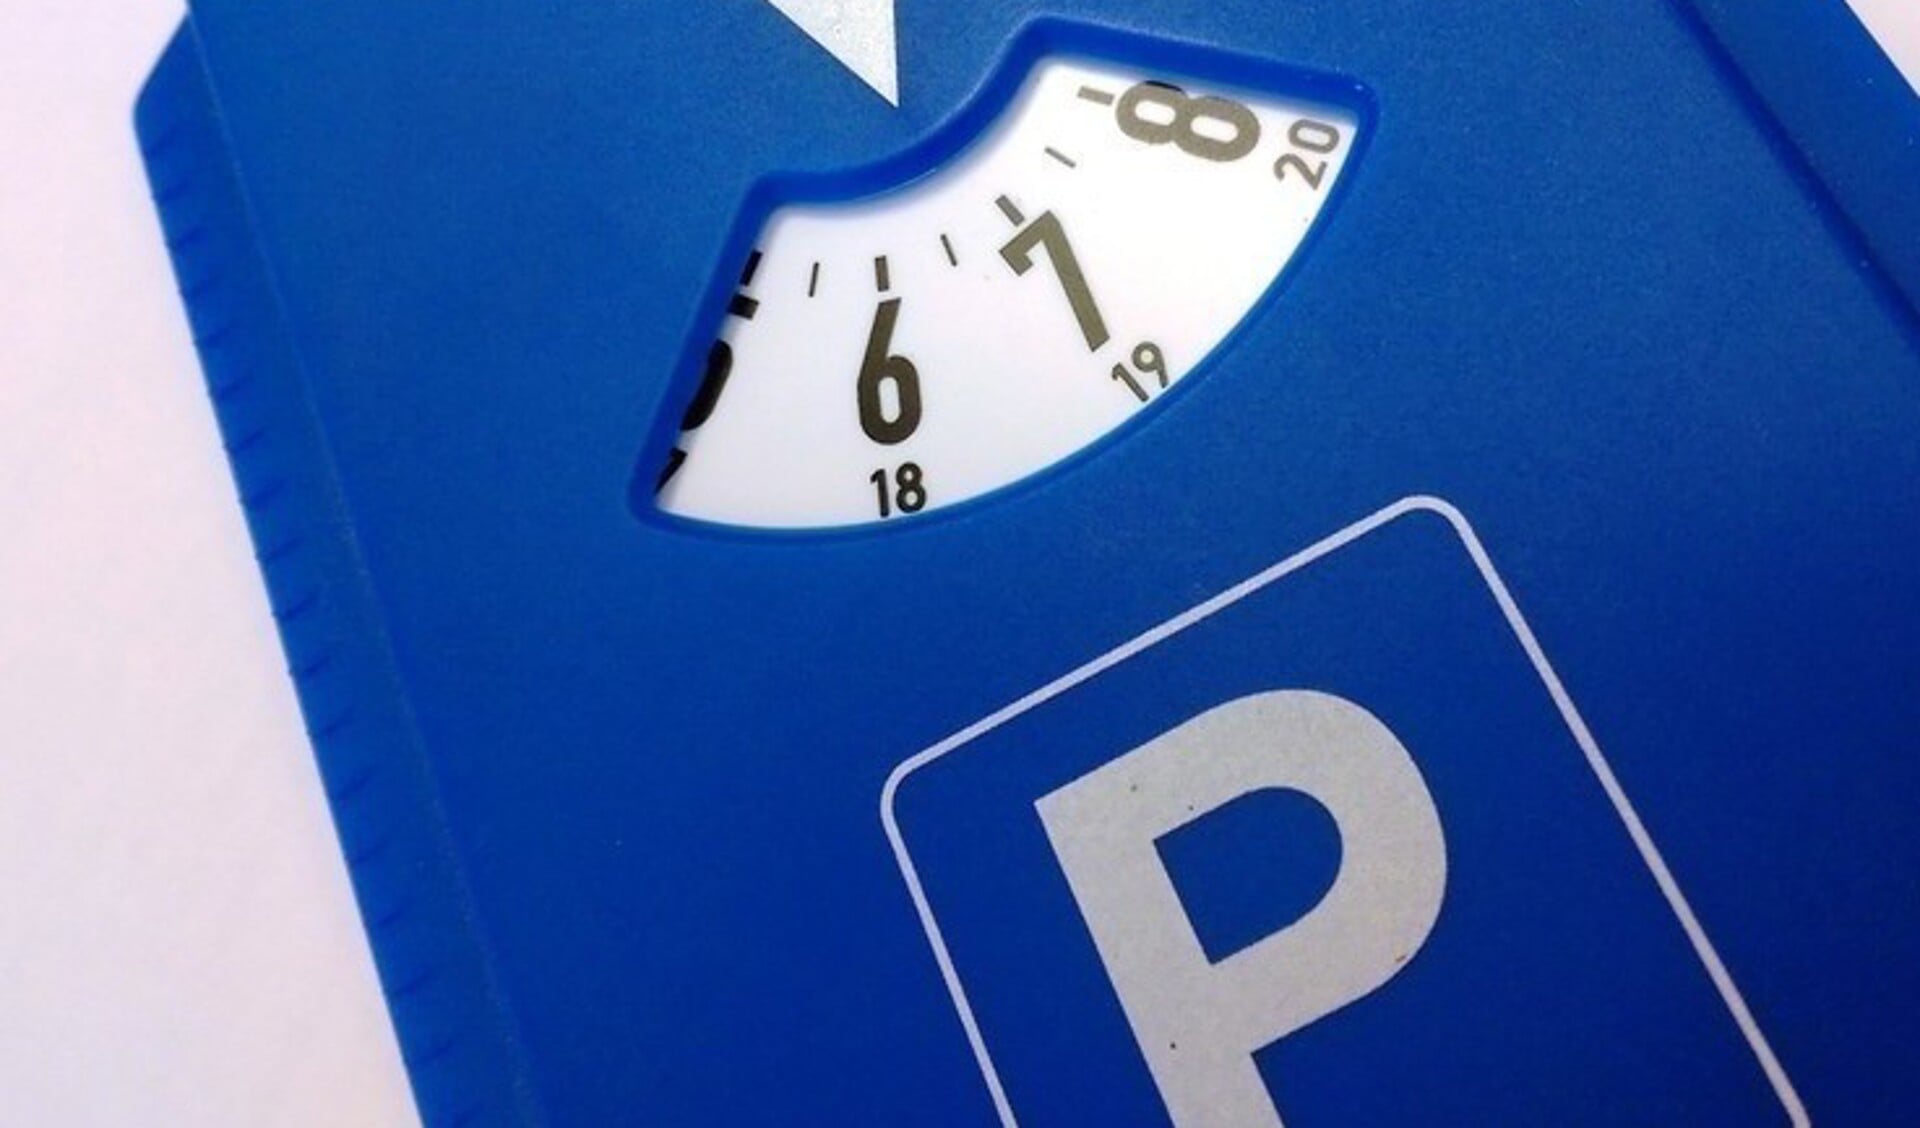 Parkeren met een blauwe kaart hoeft pas vanaf 9 uur in plaats van vanaf 8 uur.